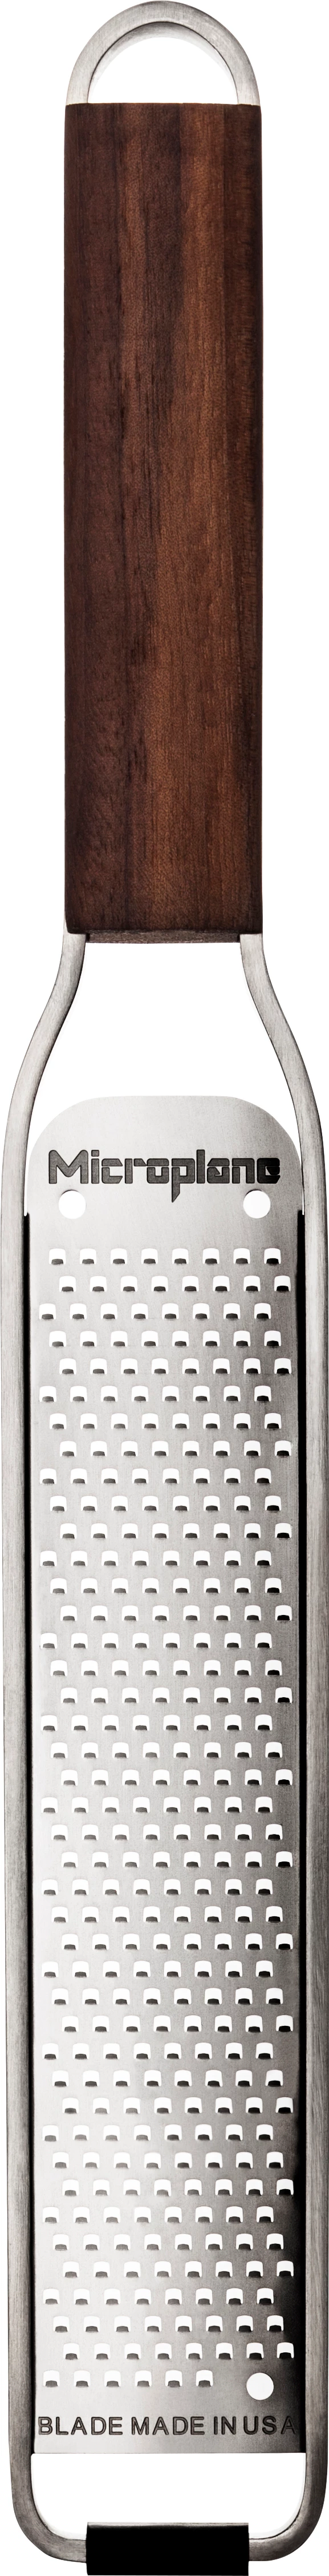 Microplane rivejern med håndtag i valnød, smal høvl, parmesan